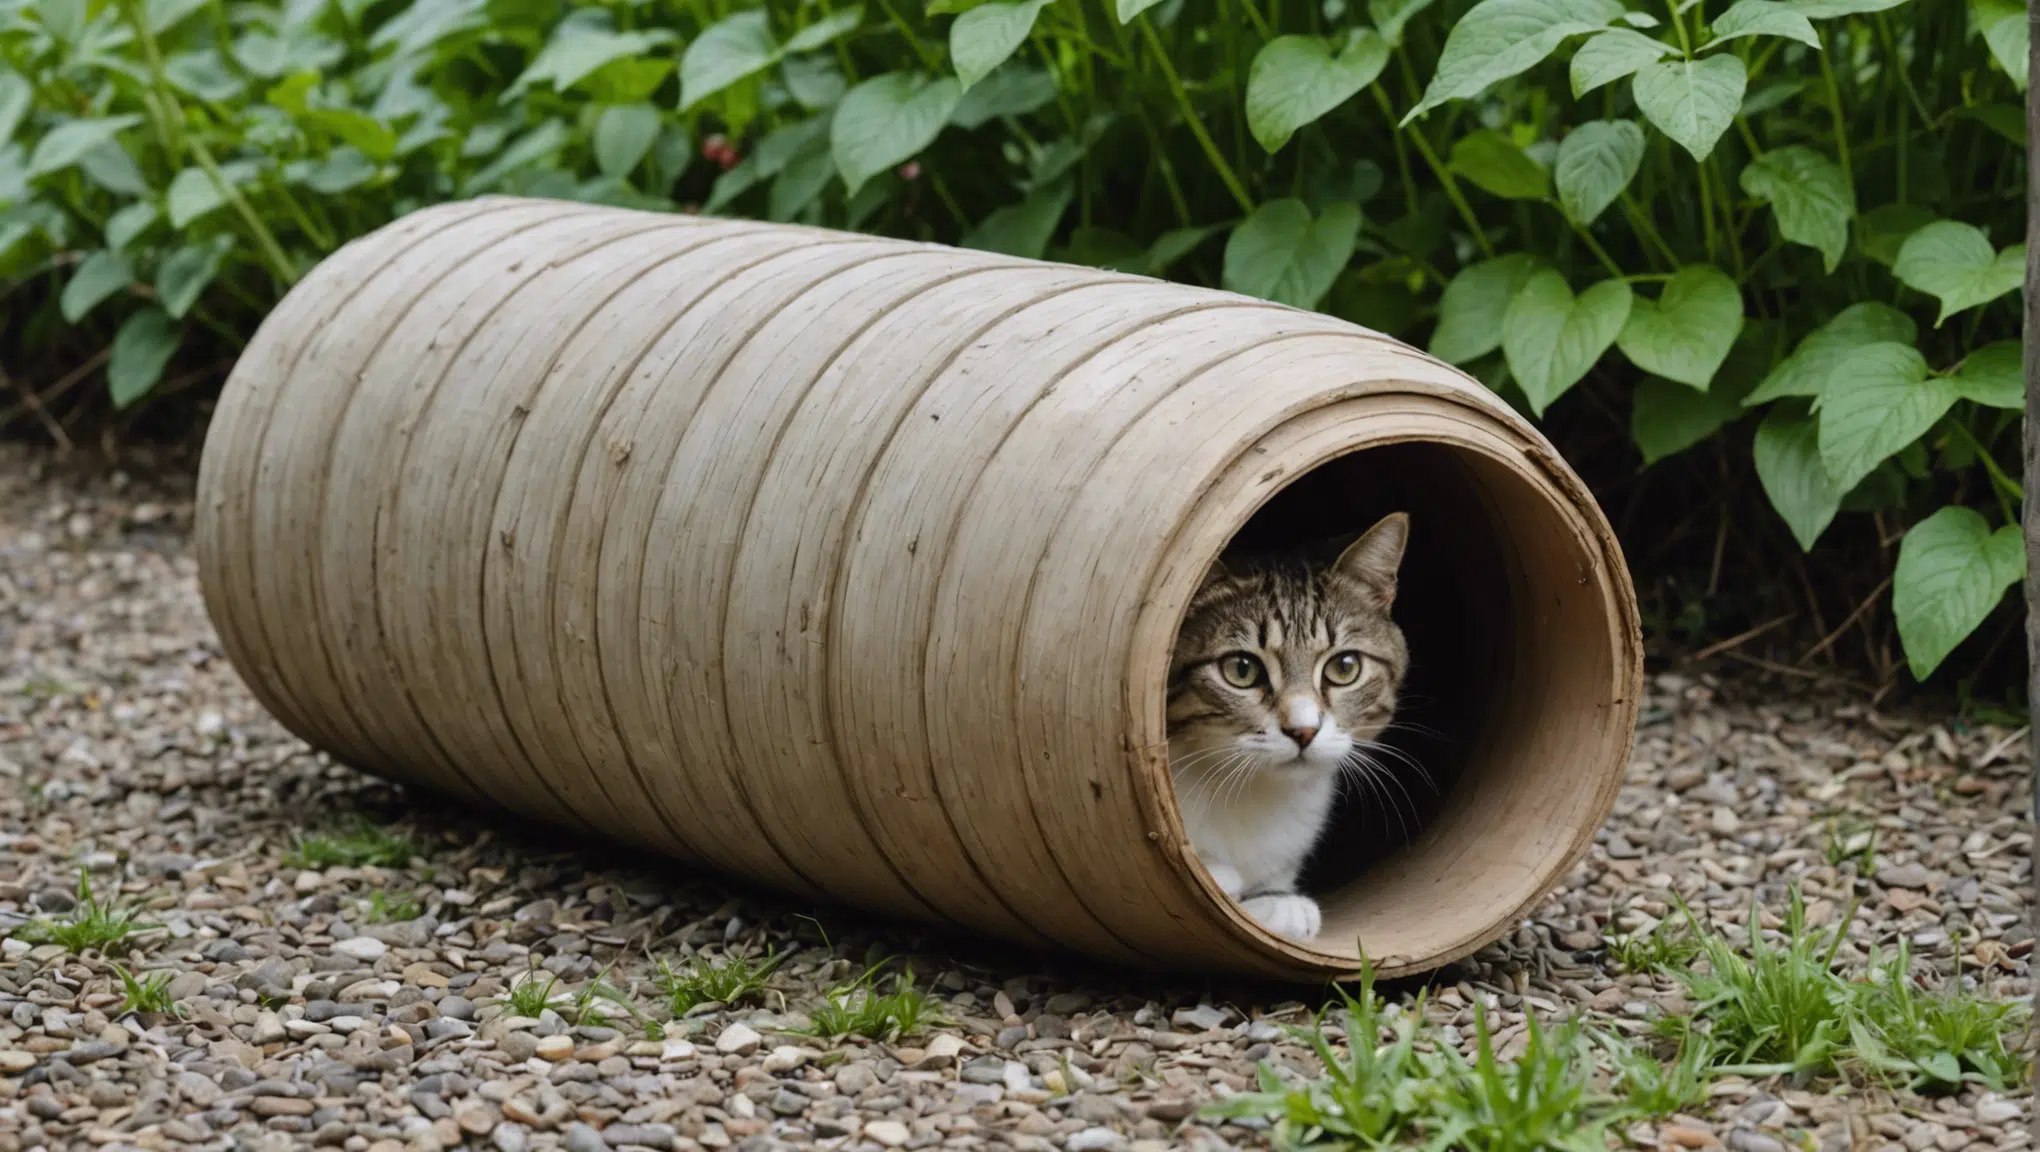 découvrez comment construire un tunnel personnalisé pour divertir votre chat ! conseils, idées et astuces pour stimuler l'activité physique et mentale de votre félin.